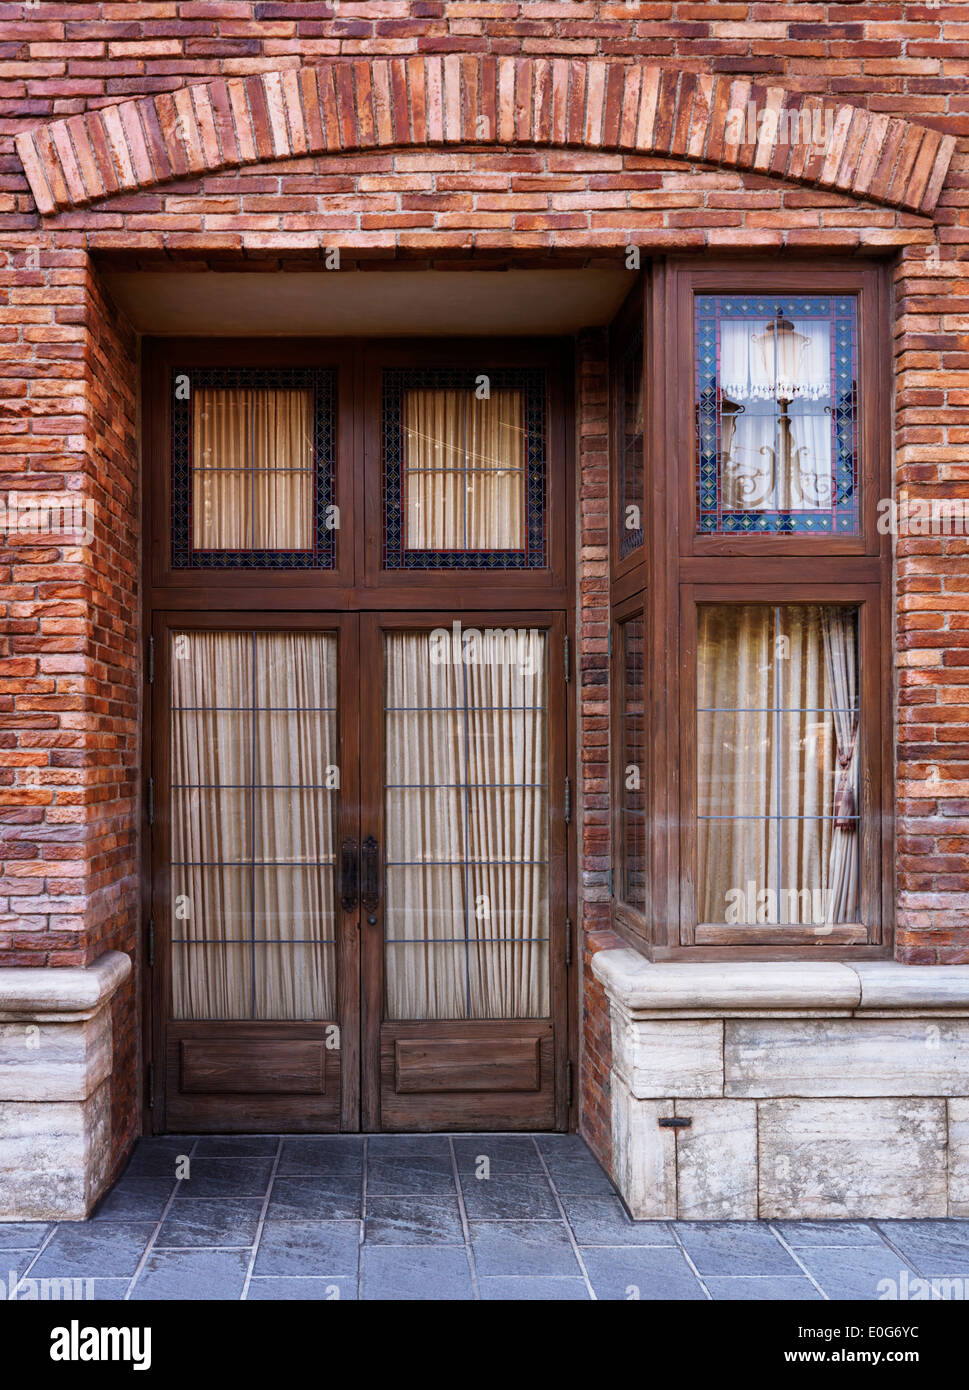 Vintage wooden door of old brick Venetian house Stock Photo